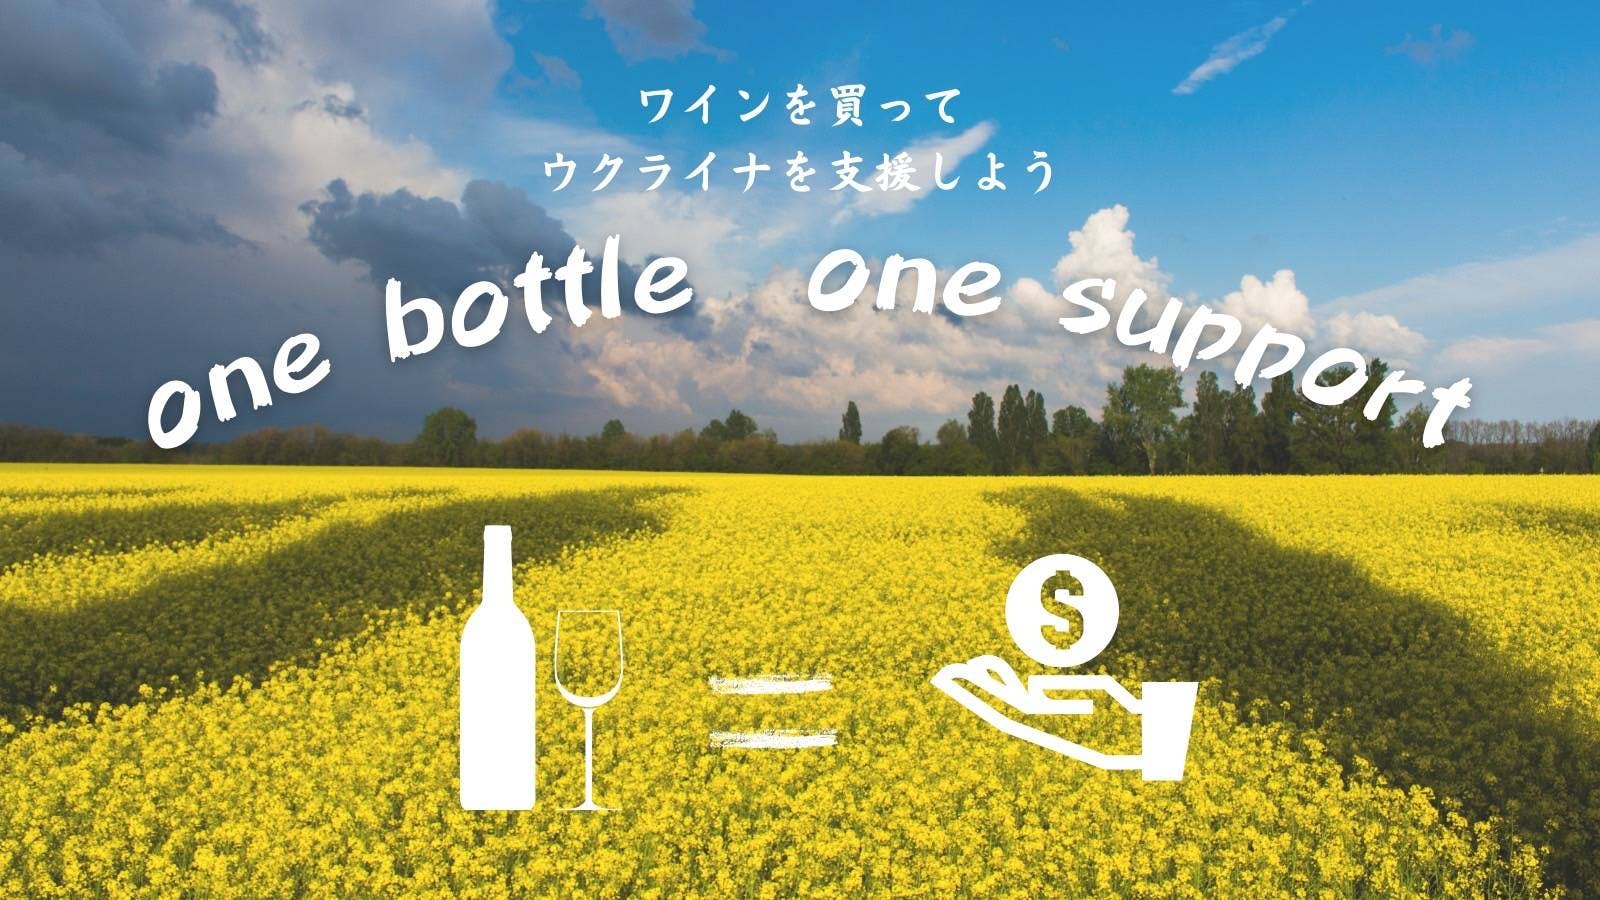 【ウクライナ支援“one bottle one support”の実施】